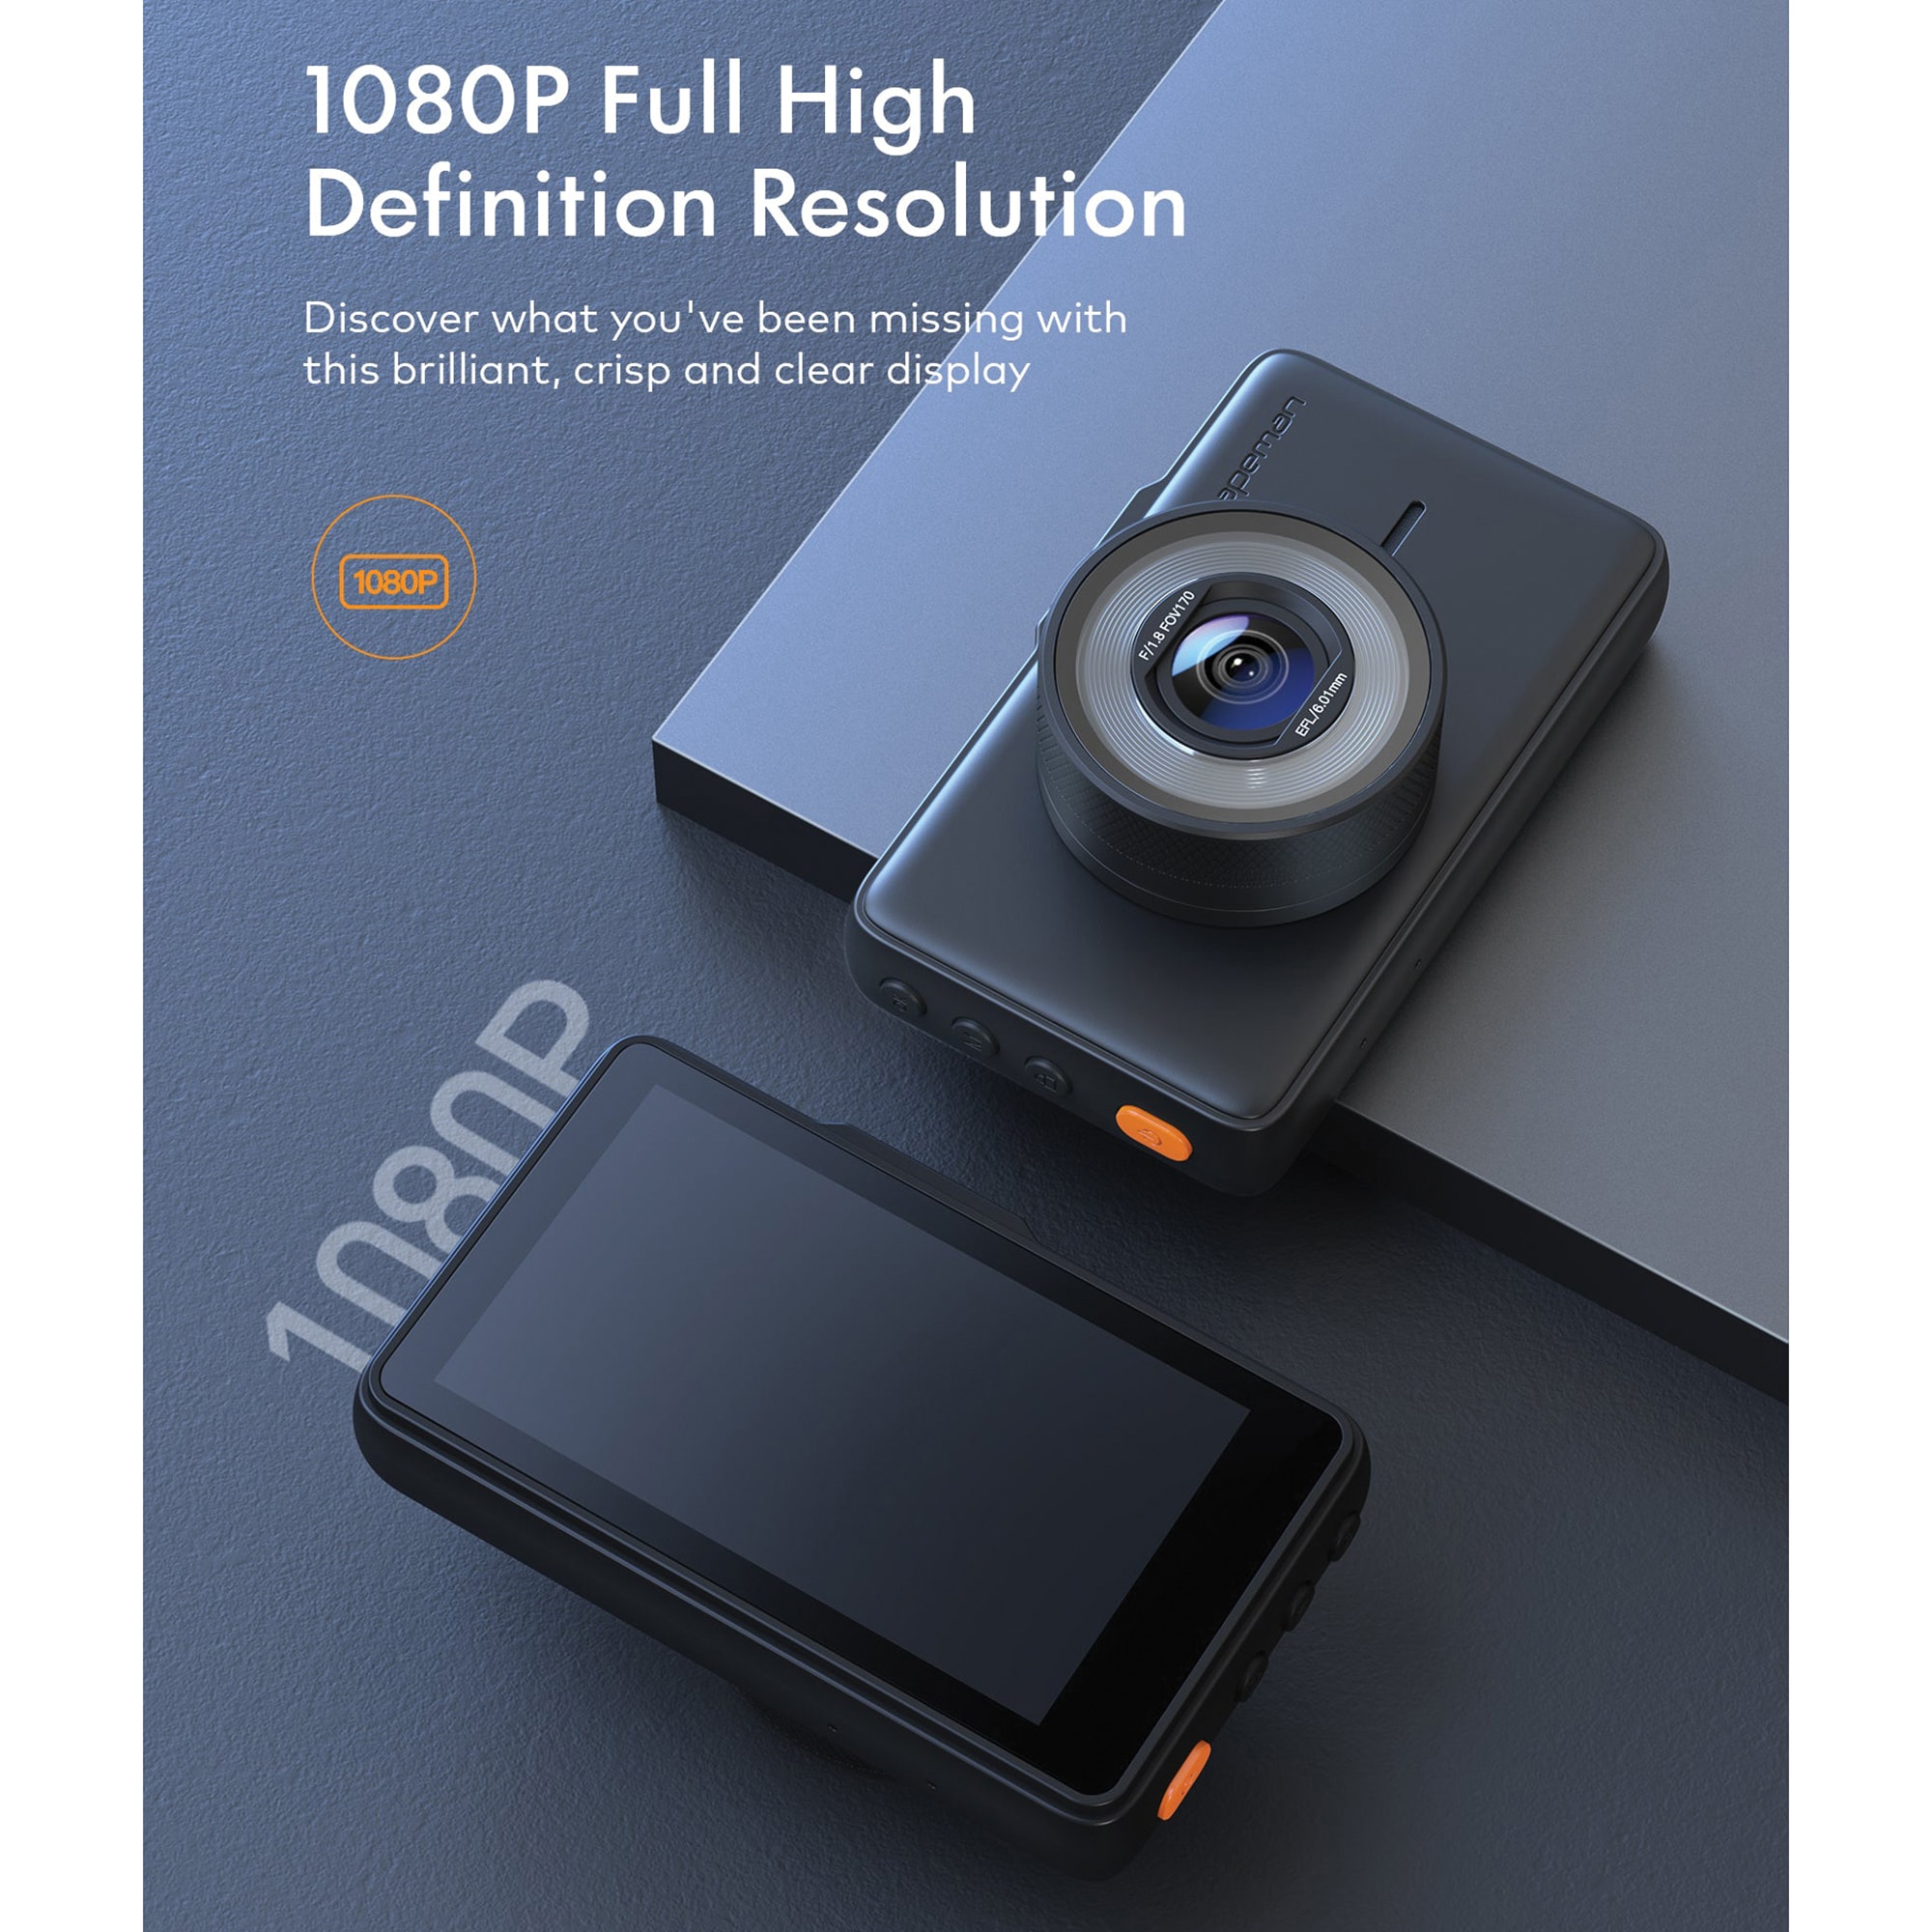 New Apeman C450 Dash Cam 1080p, Full HD, 3.0 LCD Screen